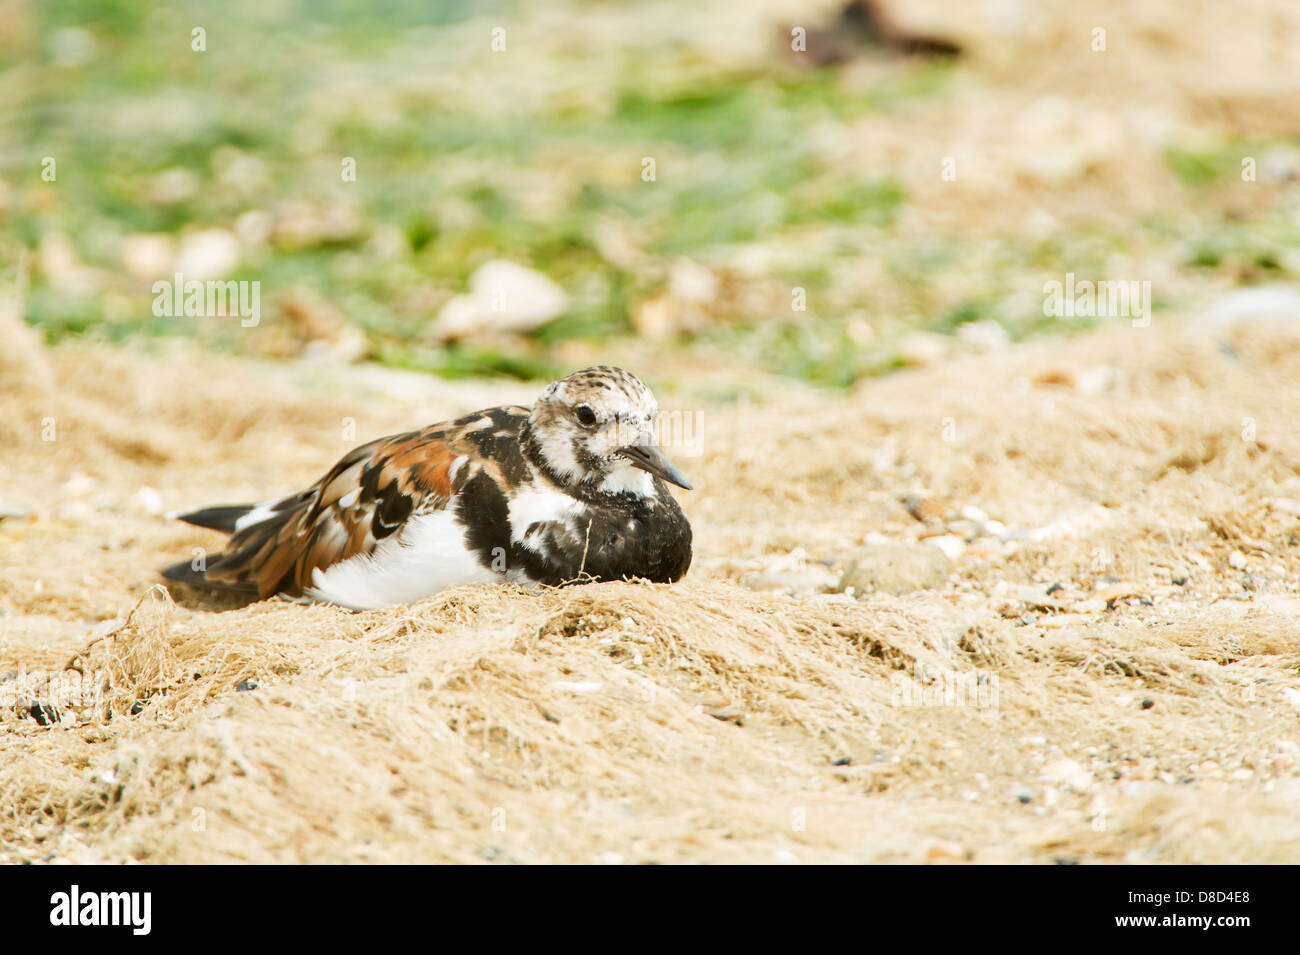 Killdeer bird in appoggio sulla sabbia, penisola di Bolivar, Texas, Stati Uniti d'America Foto Stock